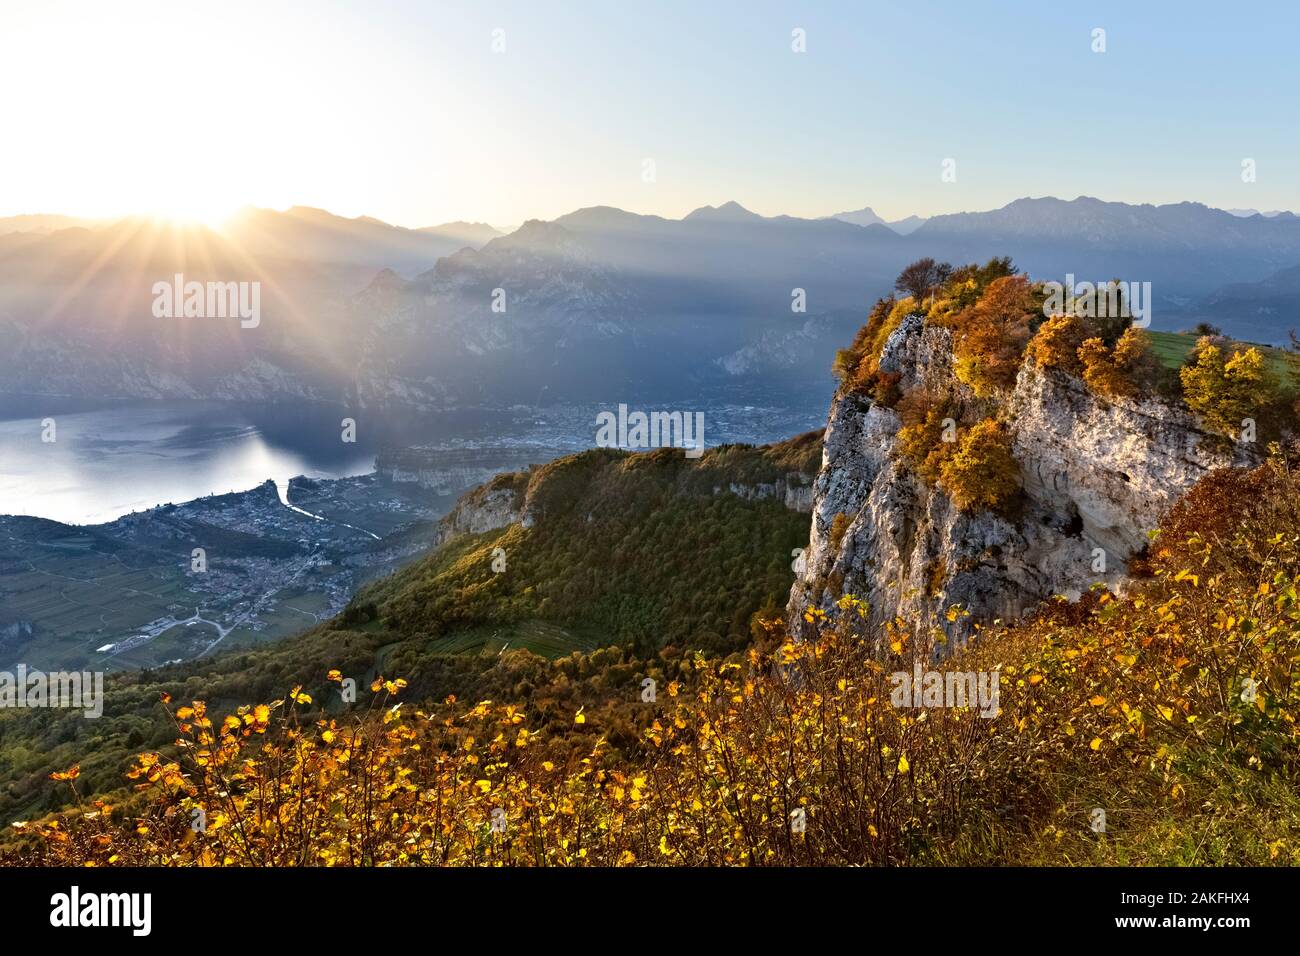 Automne coucher du soleil sur le mont Creino et Le Lac de Garde. Ronzo chienis, province de Trente, Trentin-Haut-Adige, Italie, Europe. Banque D'Images